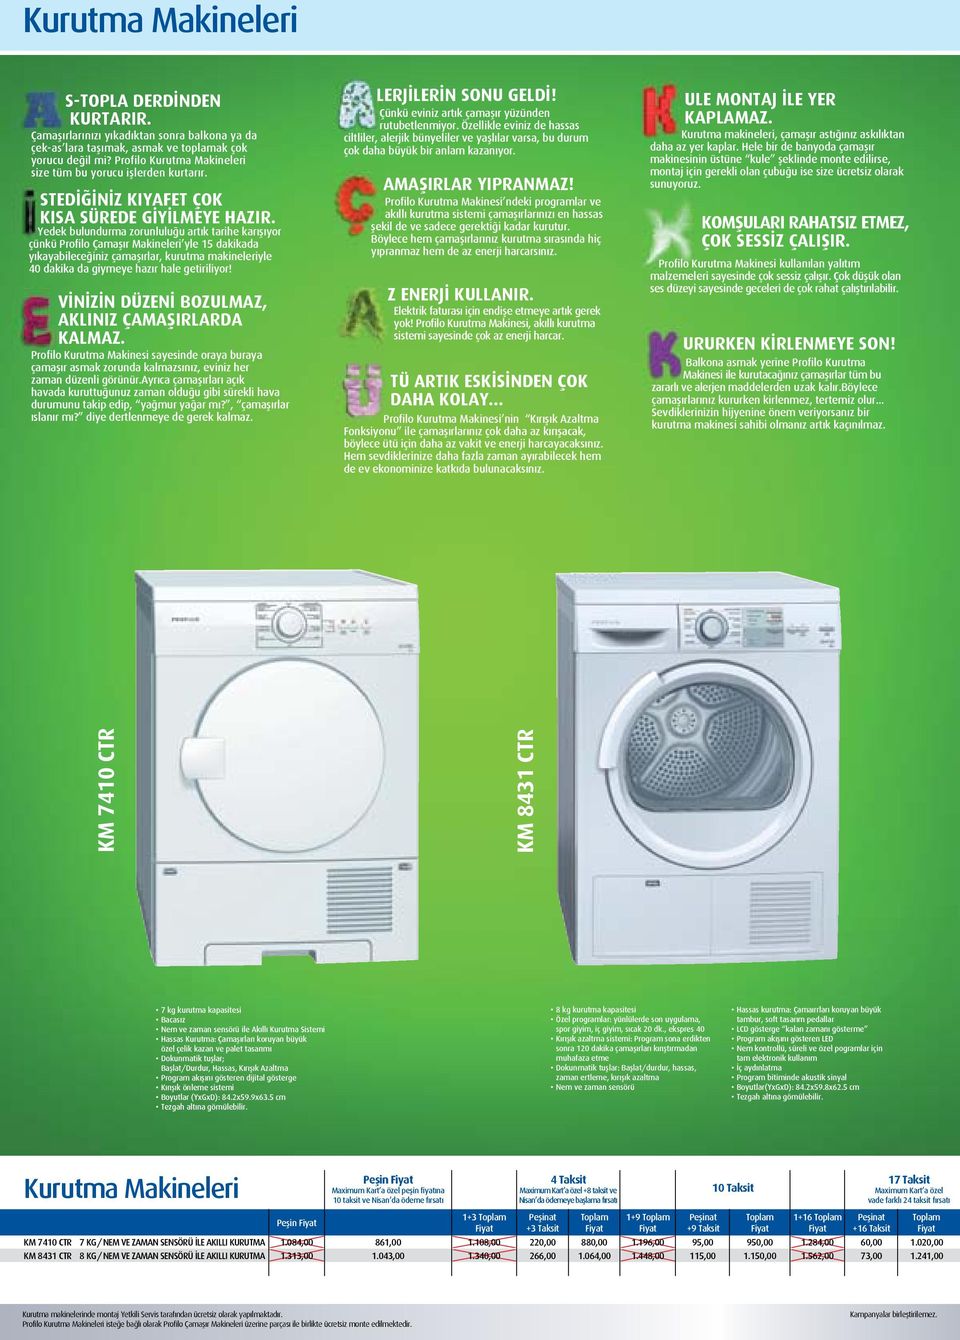 Yedek bulundurma zorunluluğu artık tarihe karışıyor çünkü Profilo Çamaşır Makineleri yle 15 dakikada yıkayabileceğiniz çamaşırlar, kurutma makineleriyle 40 dakika da giymeye hazır hale getiriliyor!